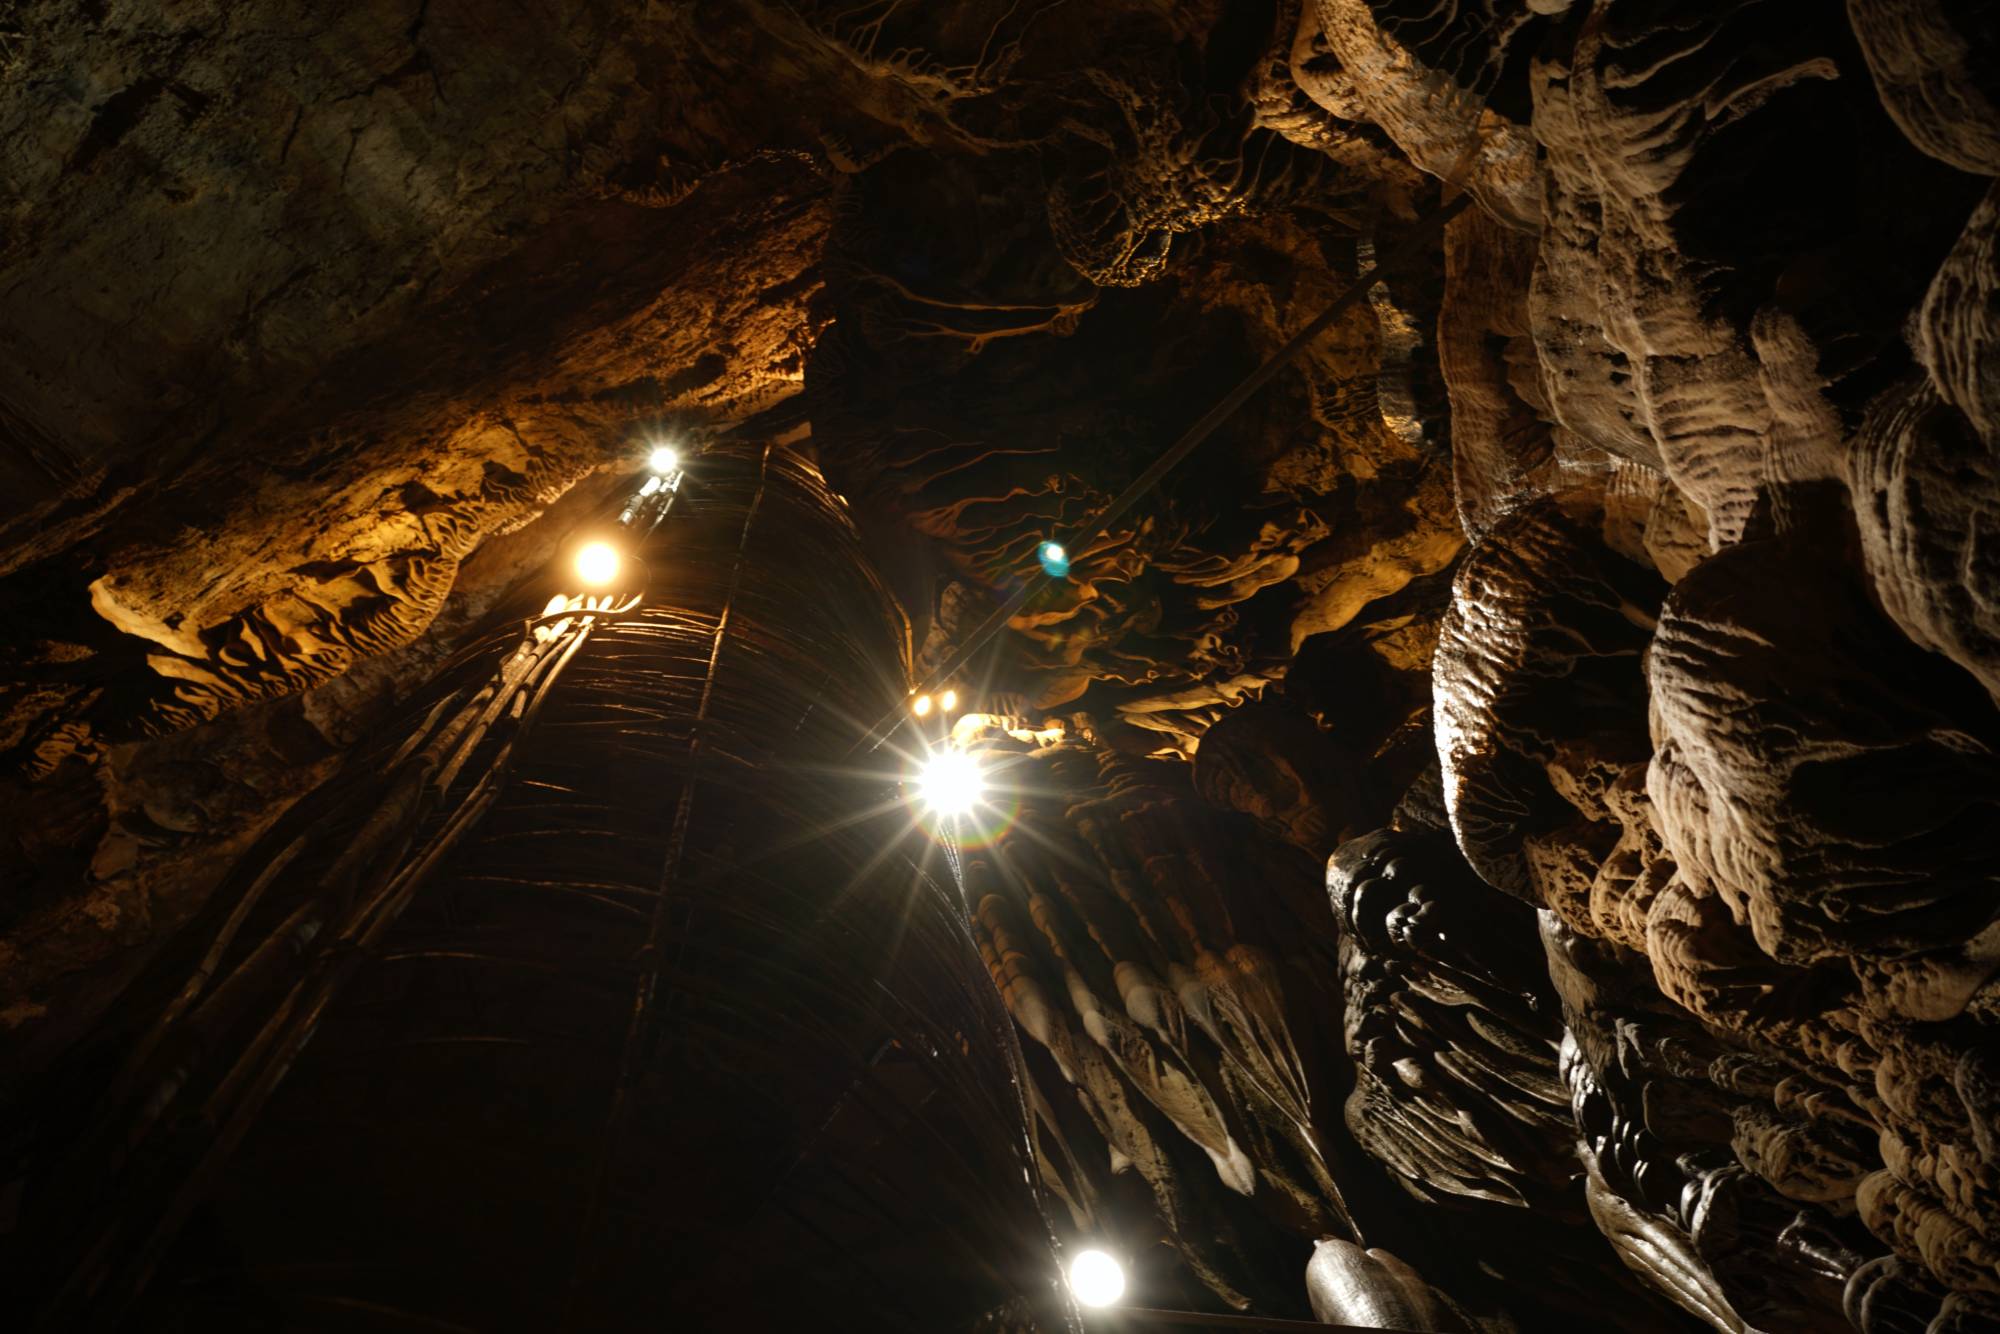 Σπήλαιο Περάματος Ιωαννίνων: Επισκεφθείτε το εντυπωσιακό σπήλαιο